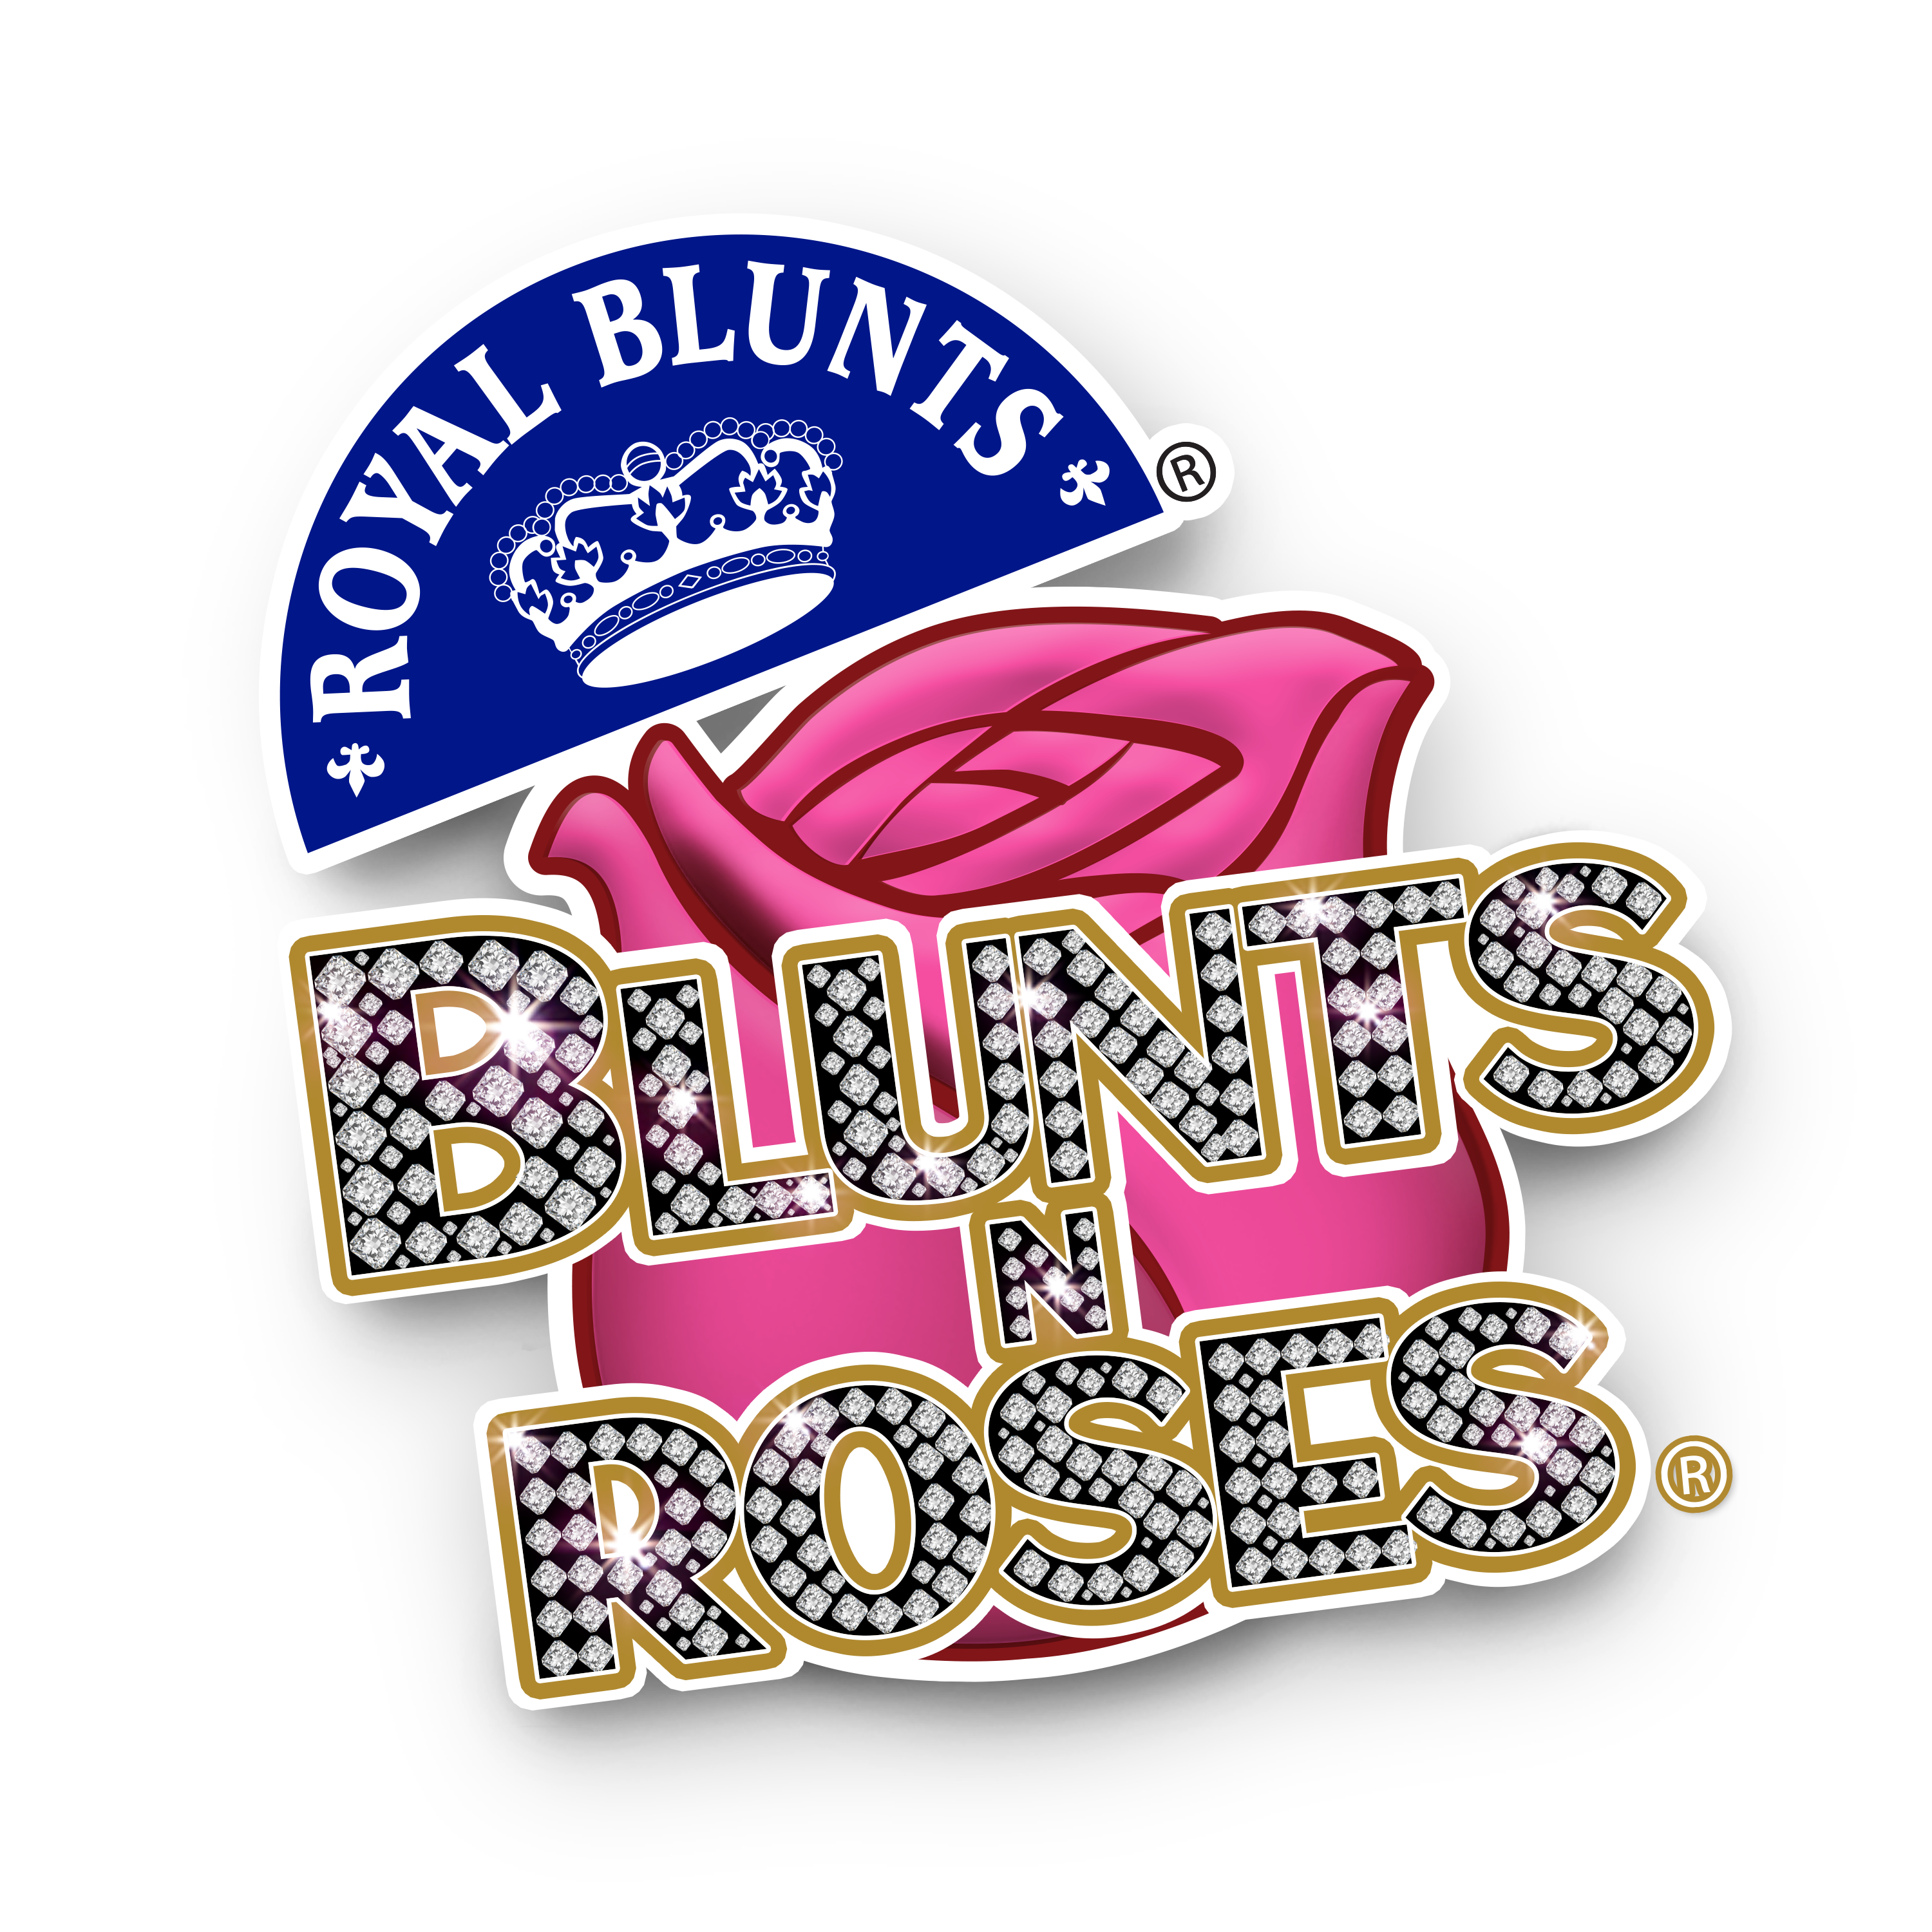 Blunts&Roses